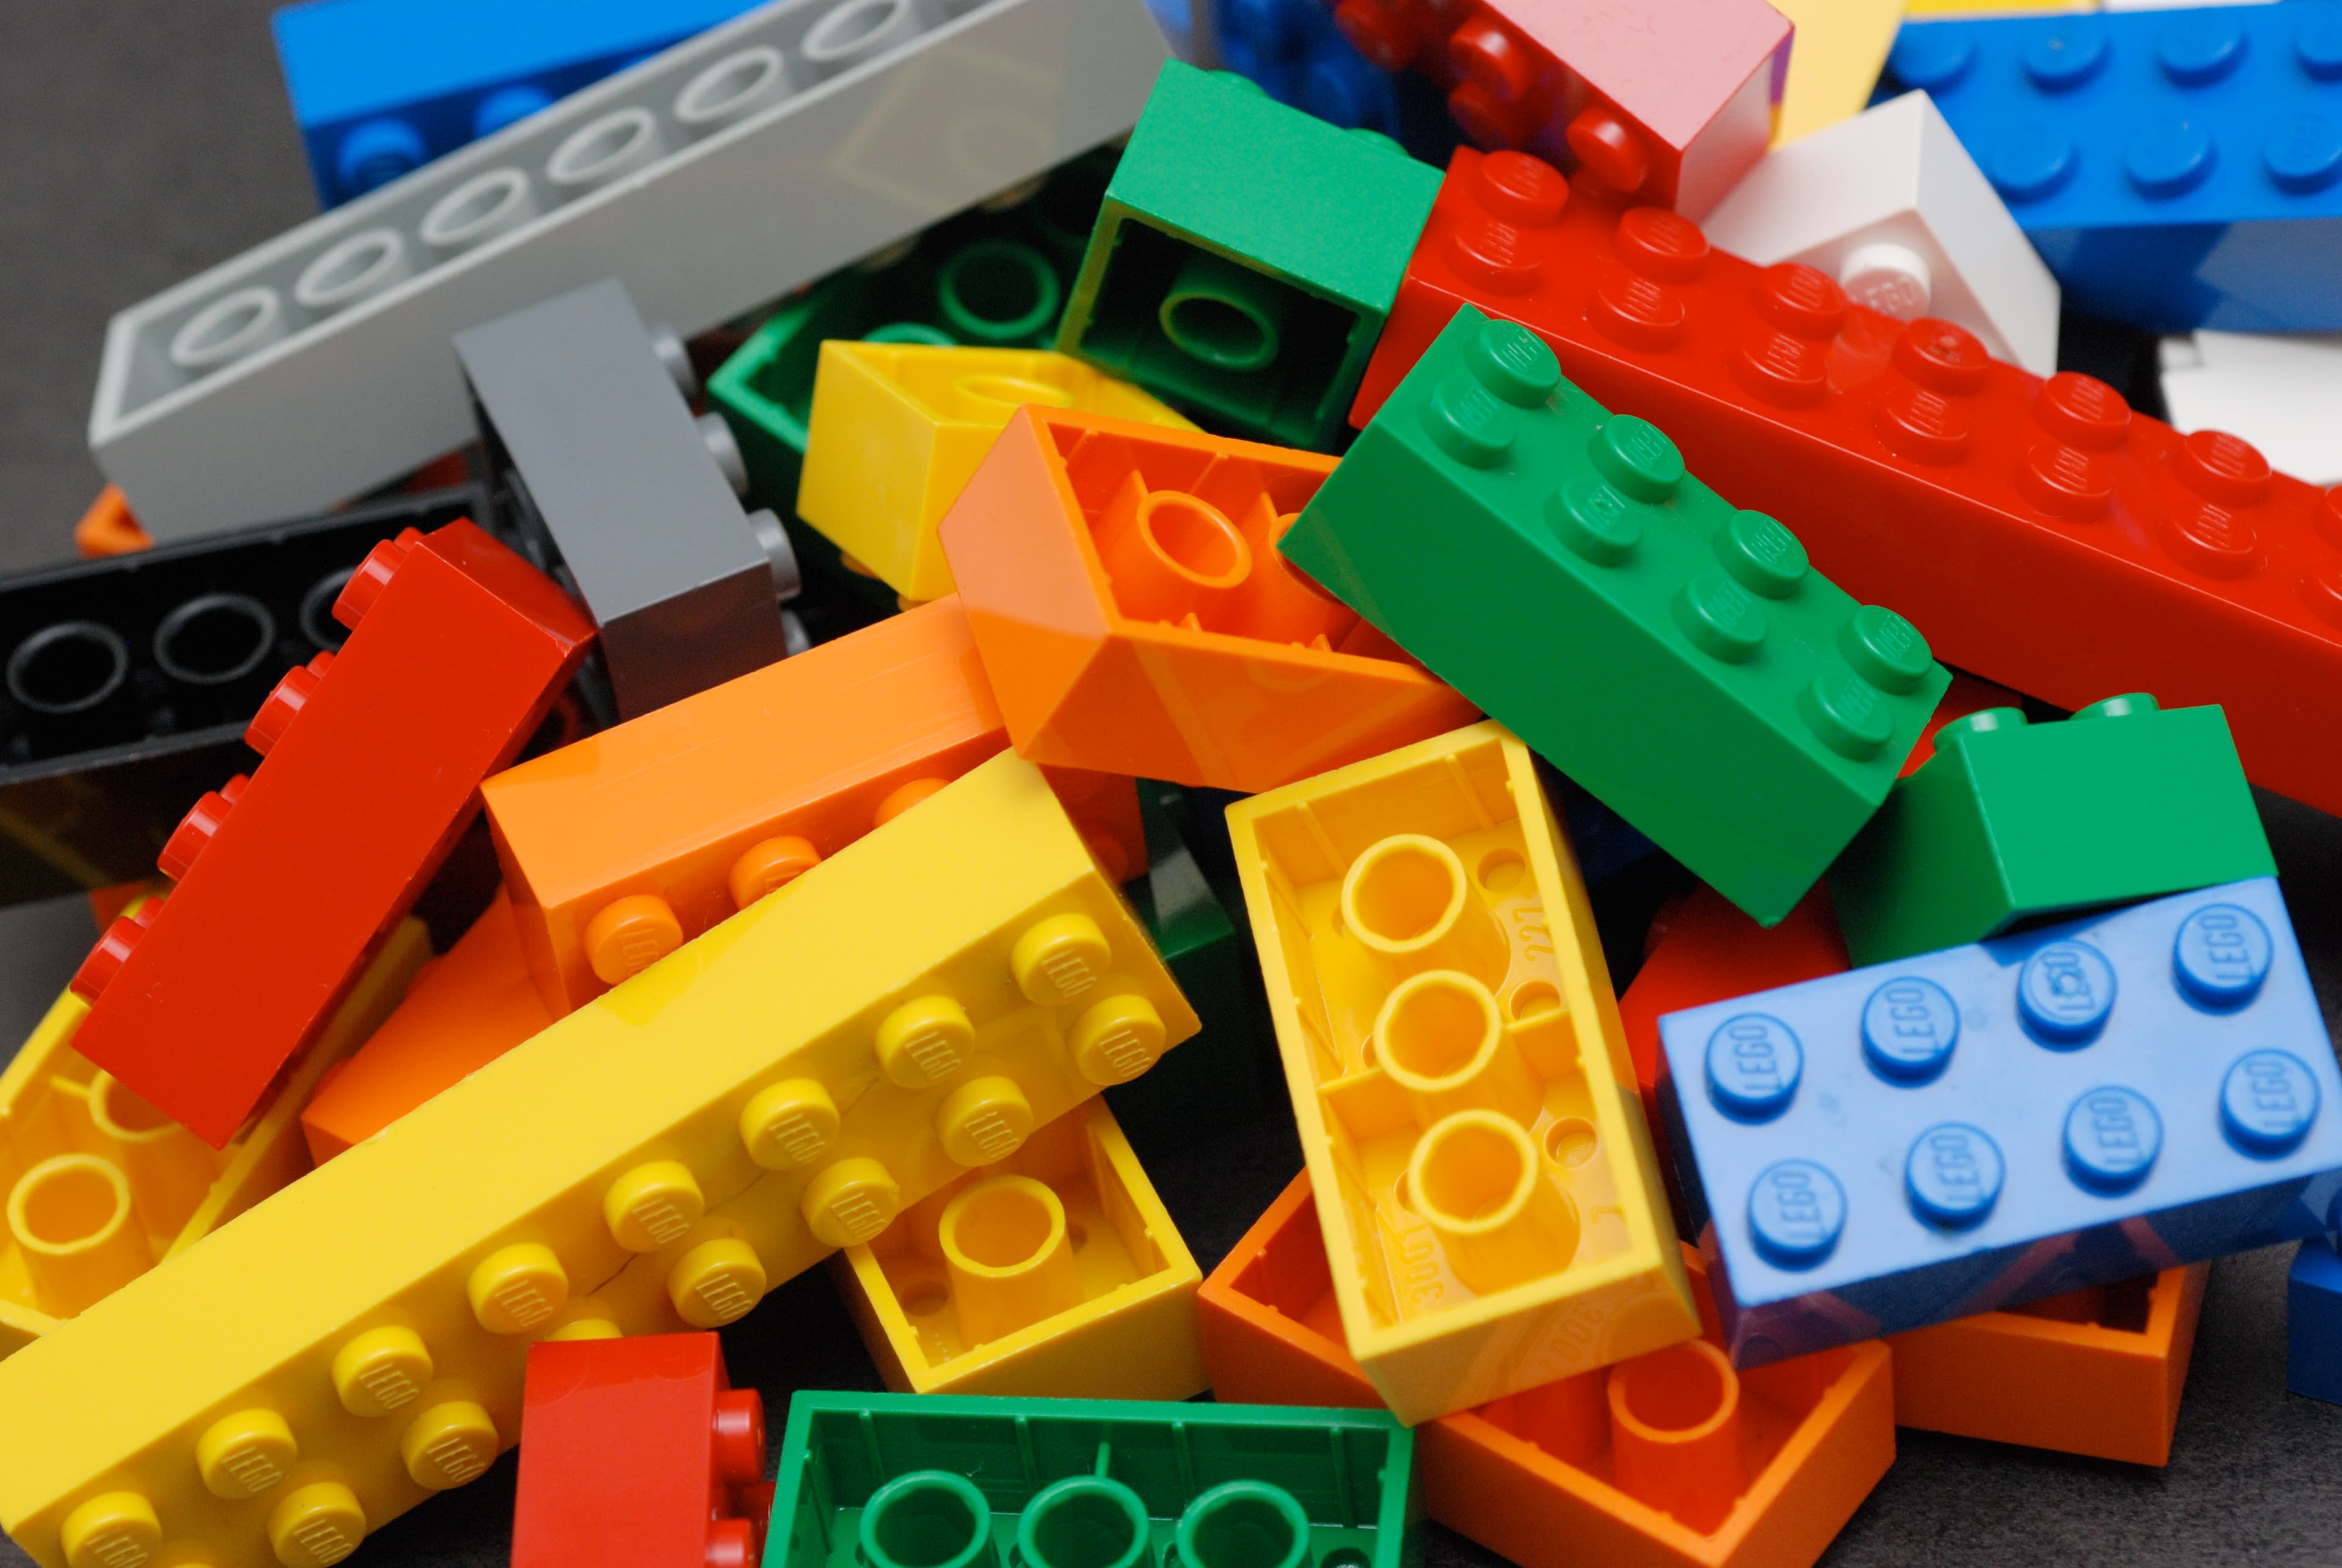 a loose pile of colourful lego bricks